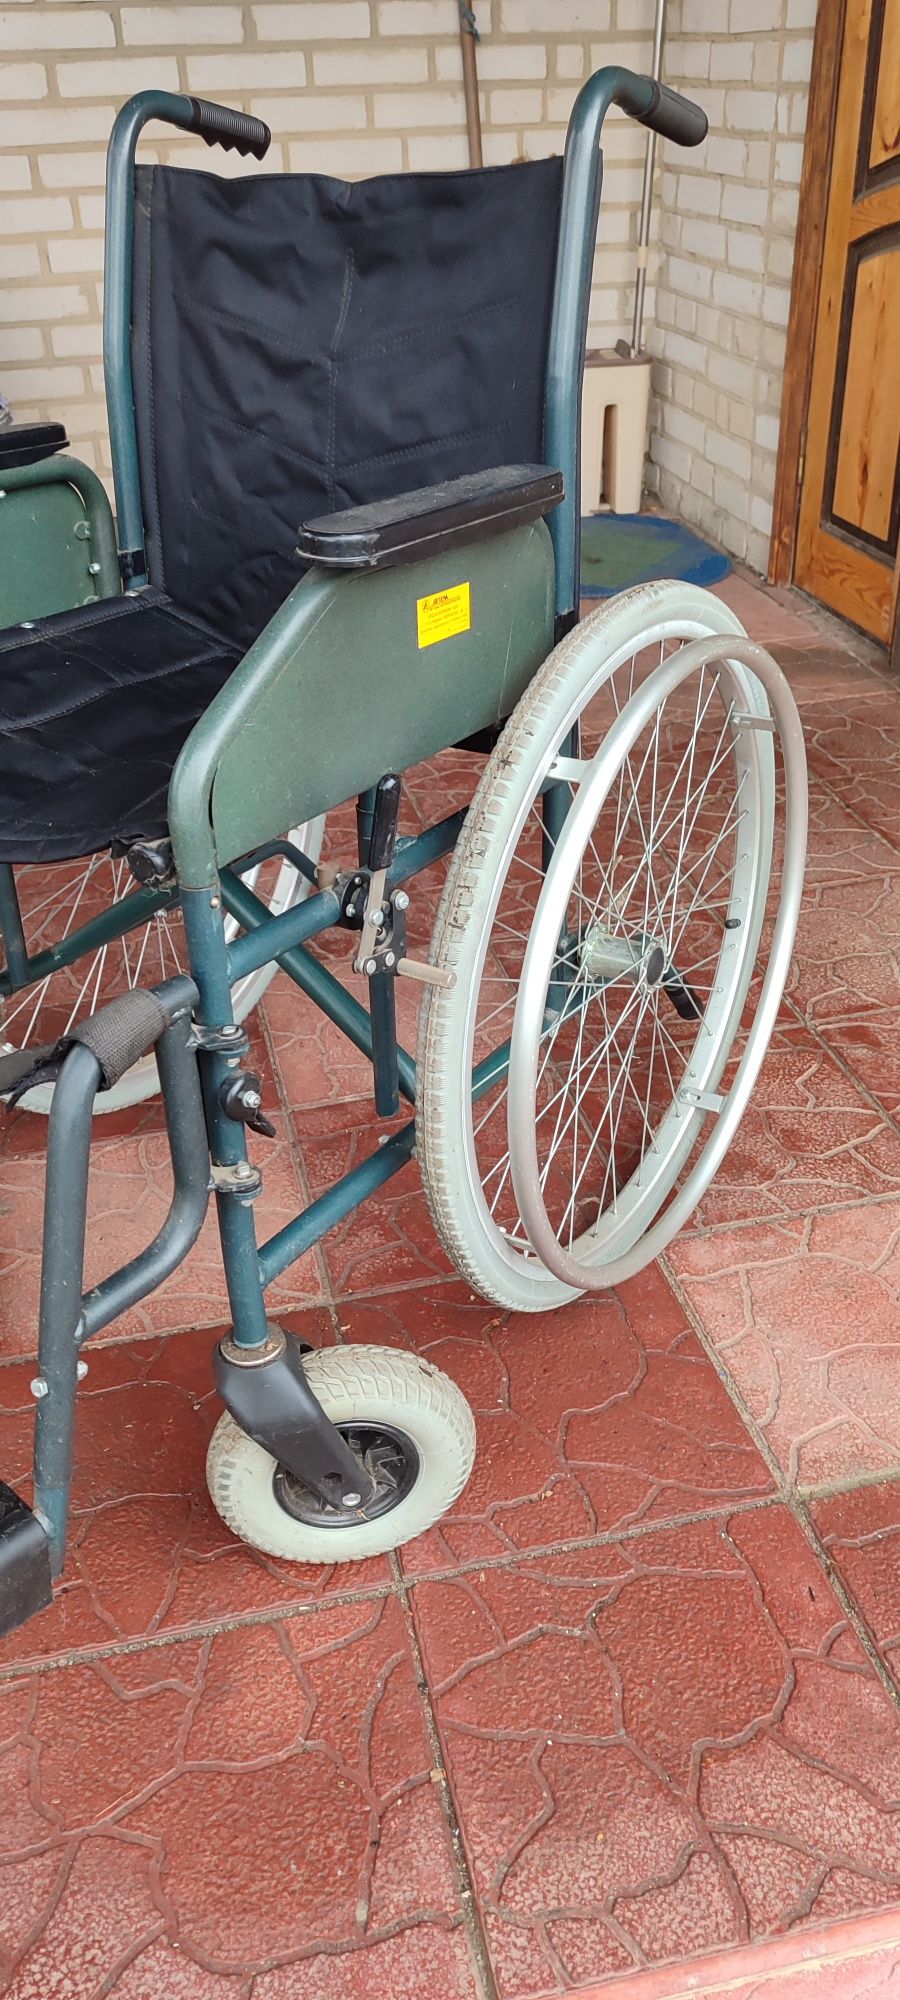 Інвалідне крісло-коляска КИС-1